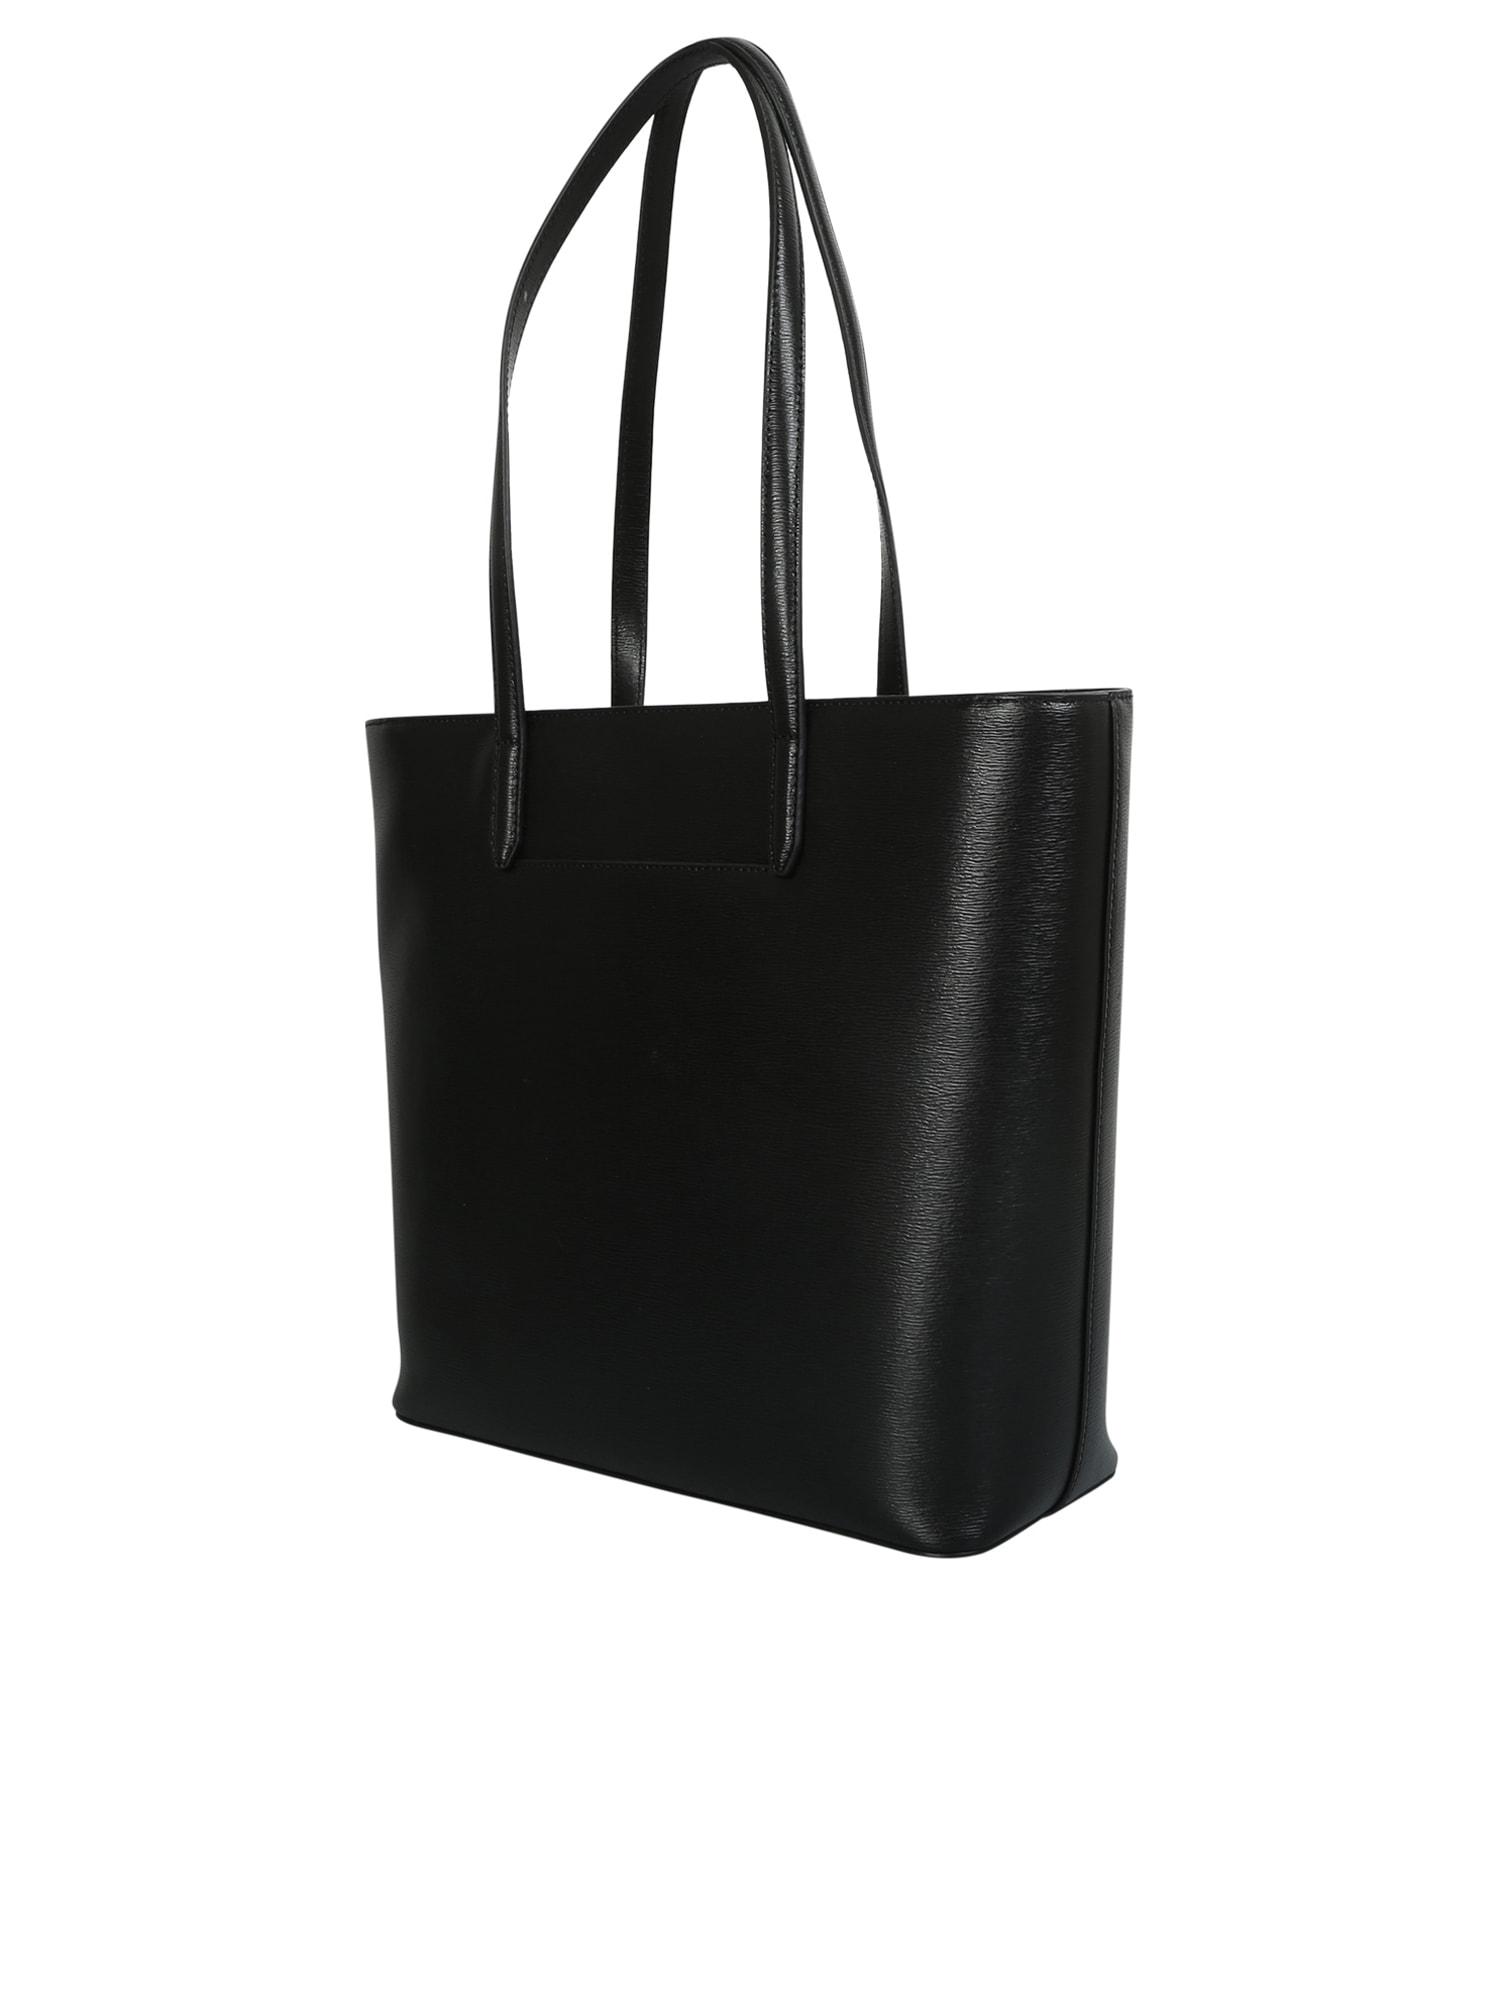 DKNY Bryant Tote Bag in Black | Lyst